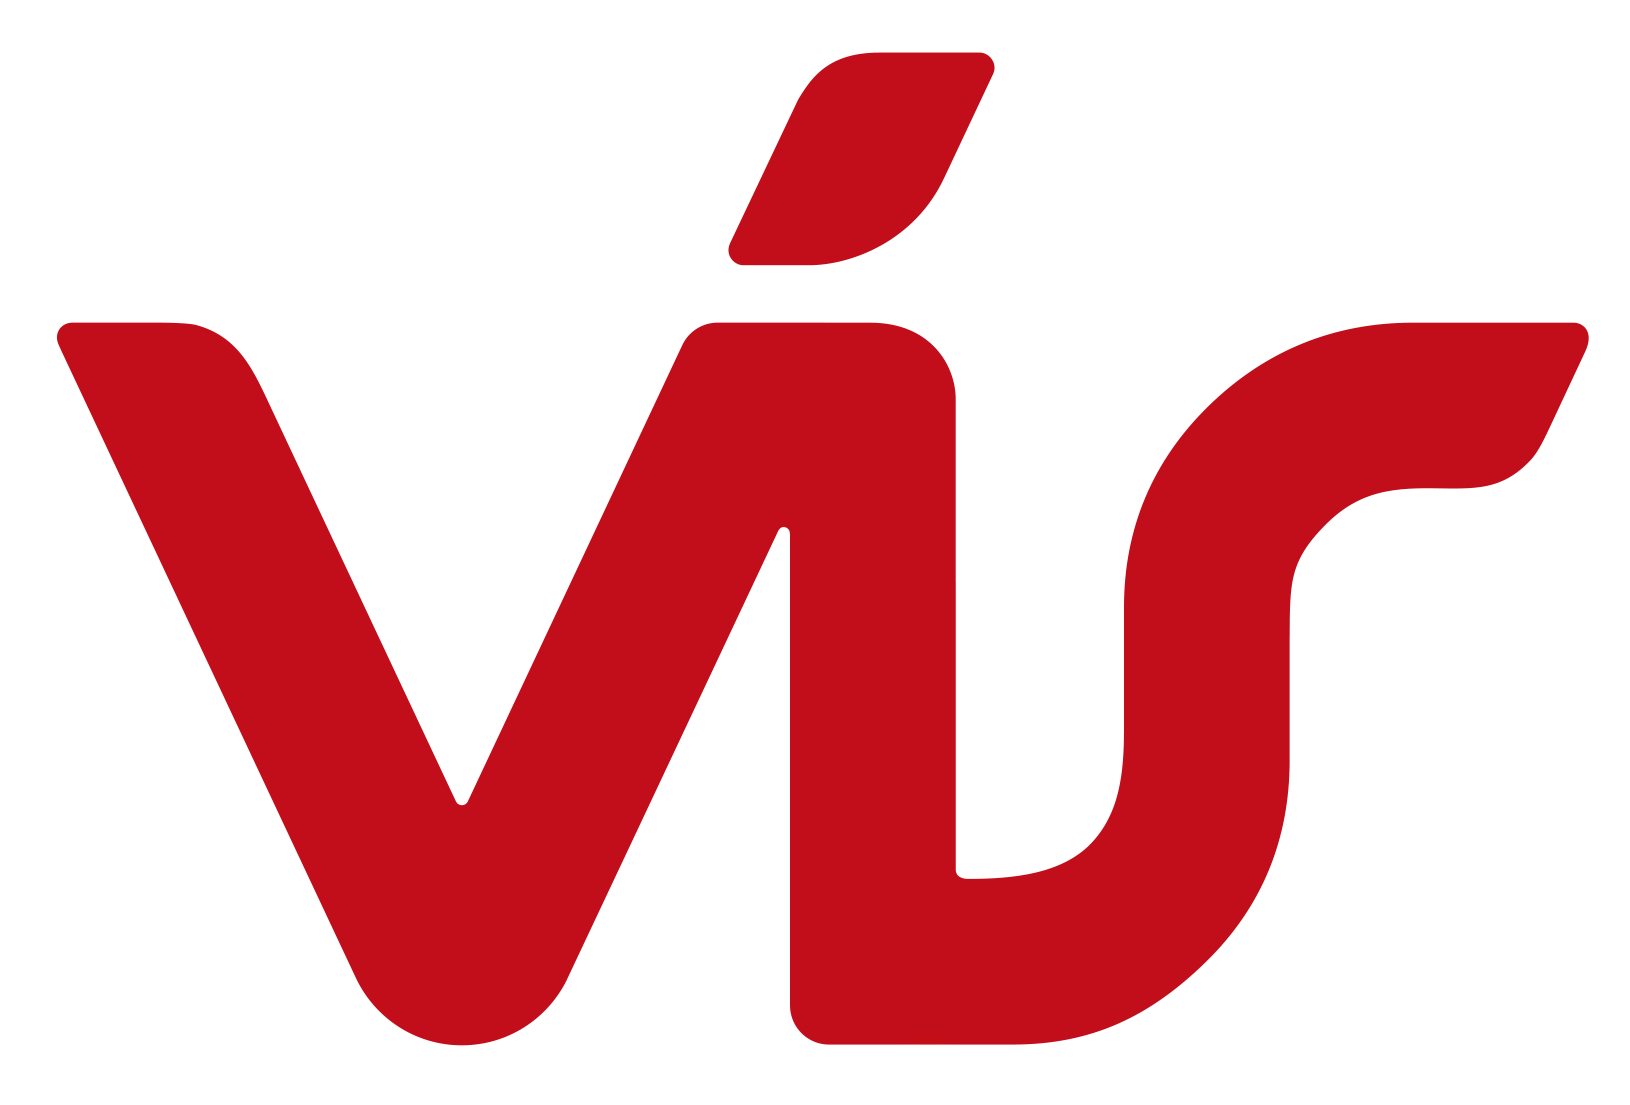 vis_logo-300dpi(rautt)